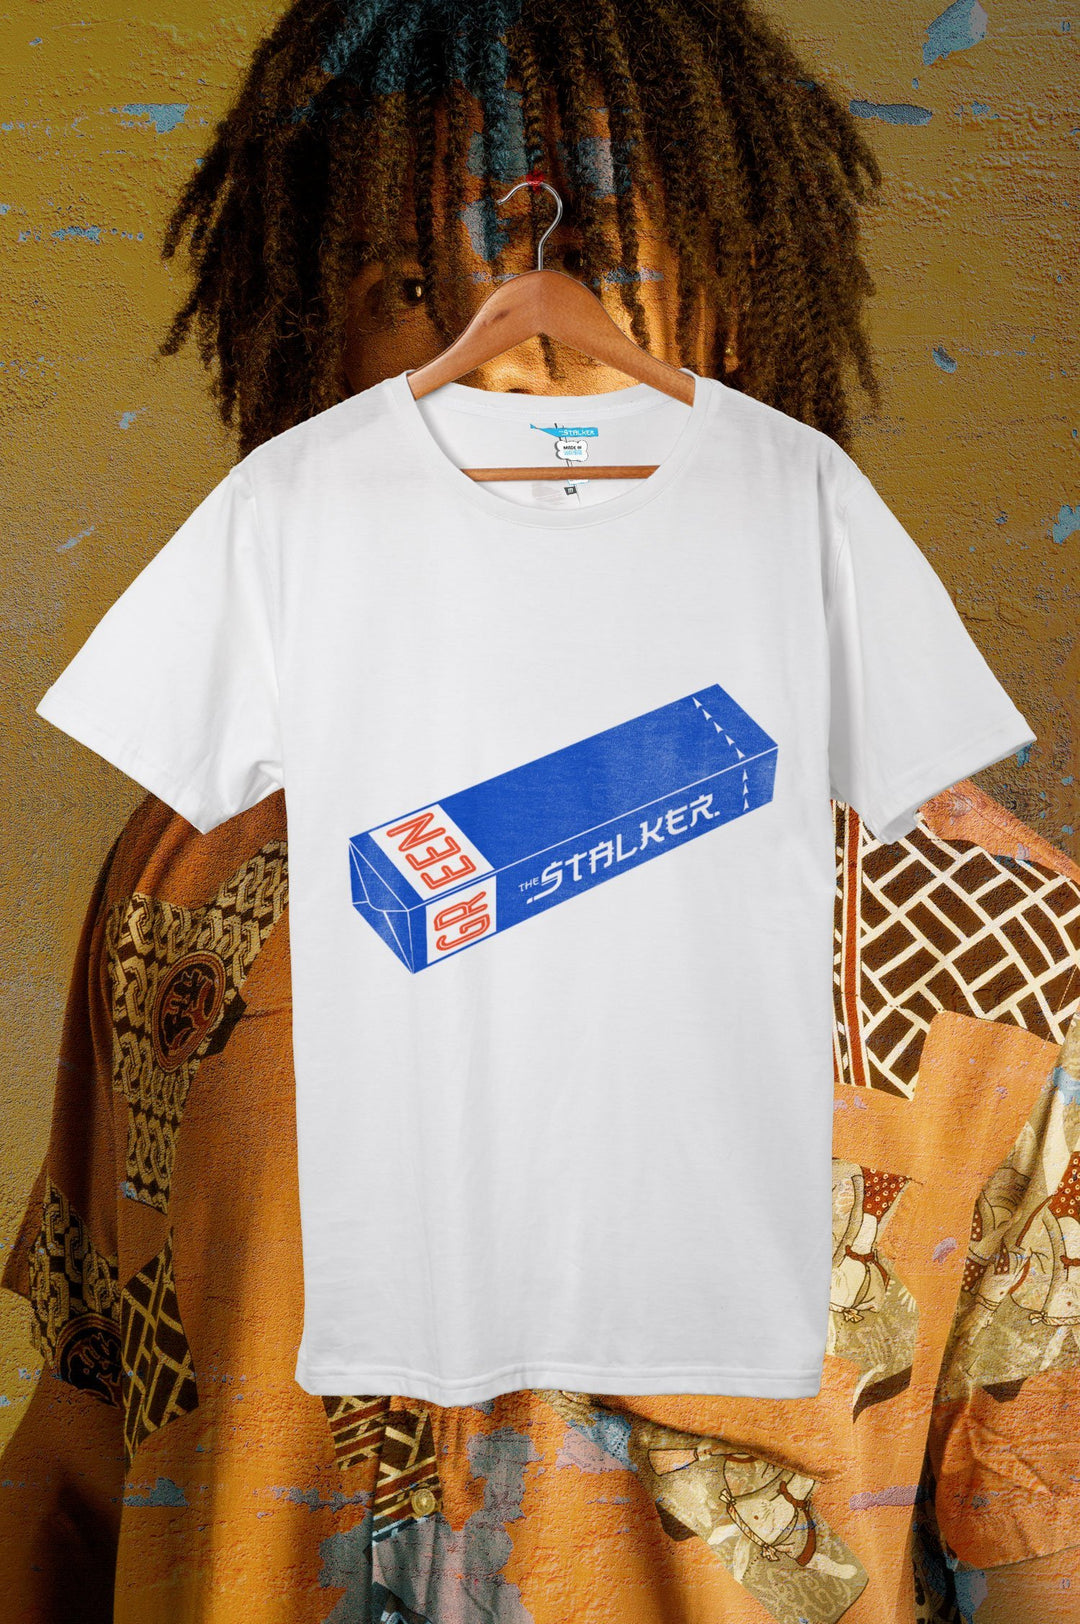 The S! Gum T-Shirt